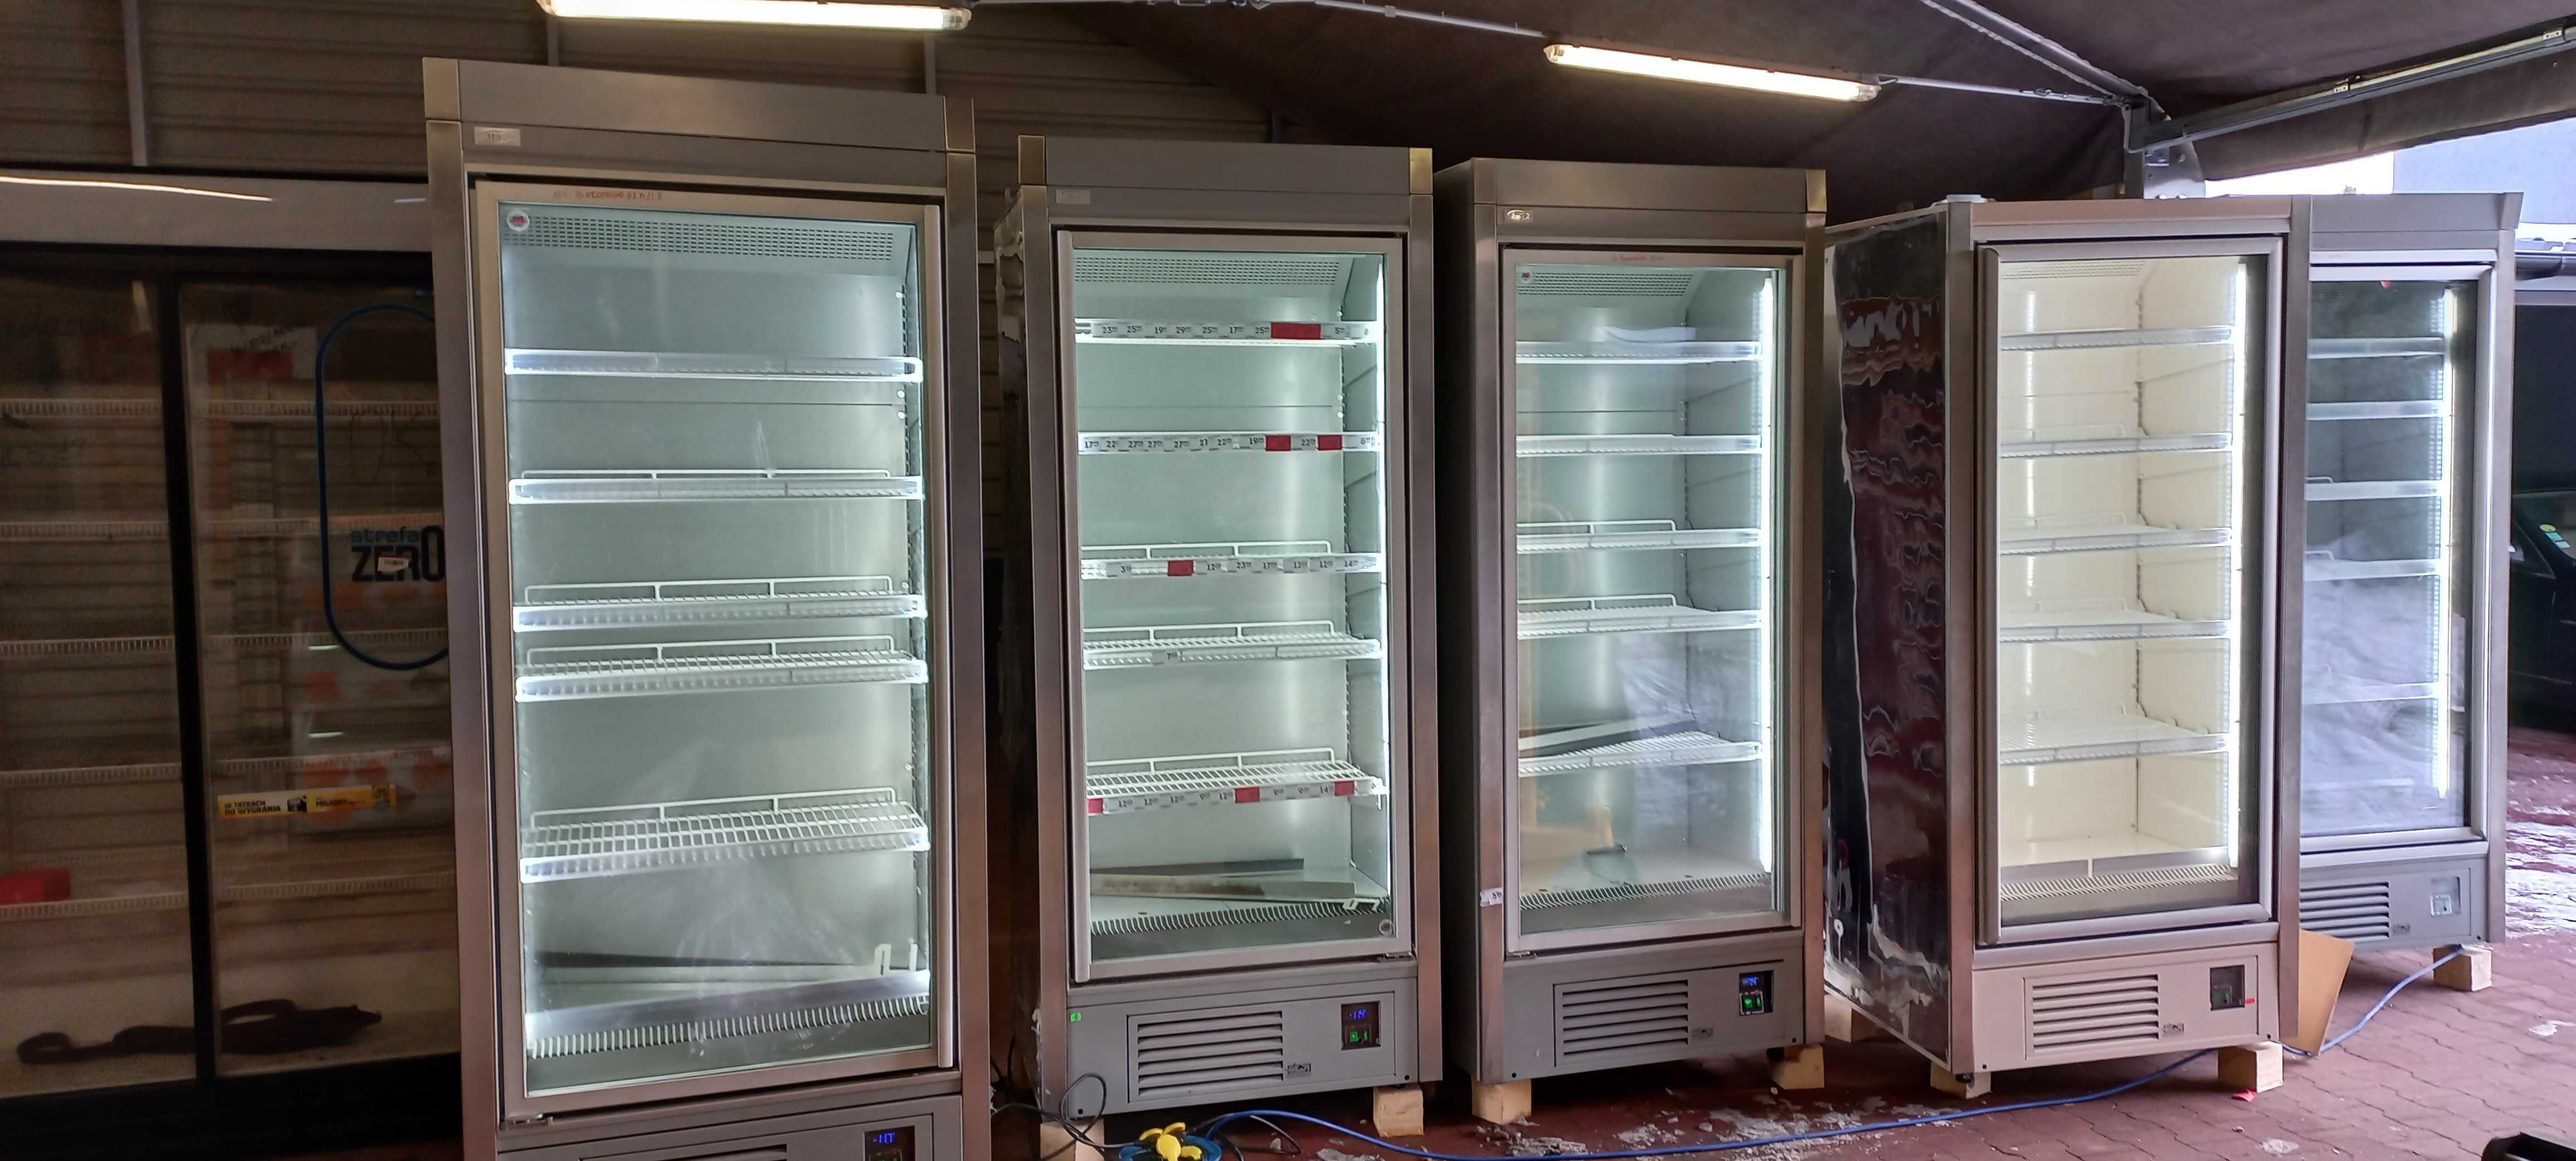 Skup gastro urządzeń chłodniczych lada Unox Juka lodówka JBG mawi iglo